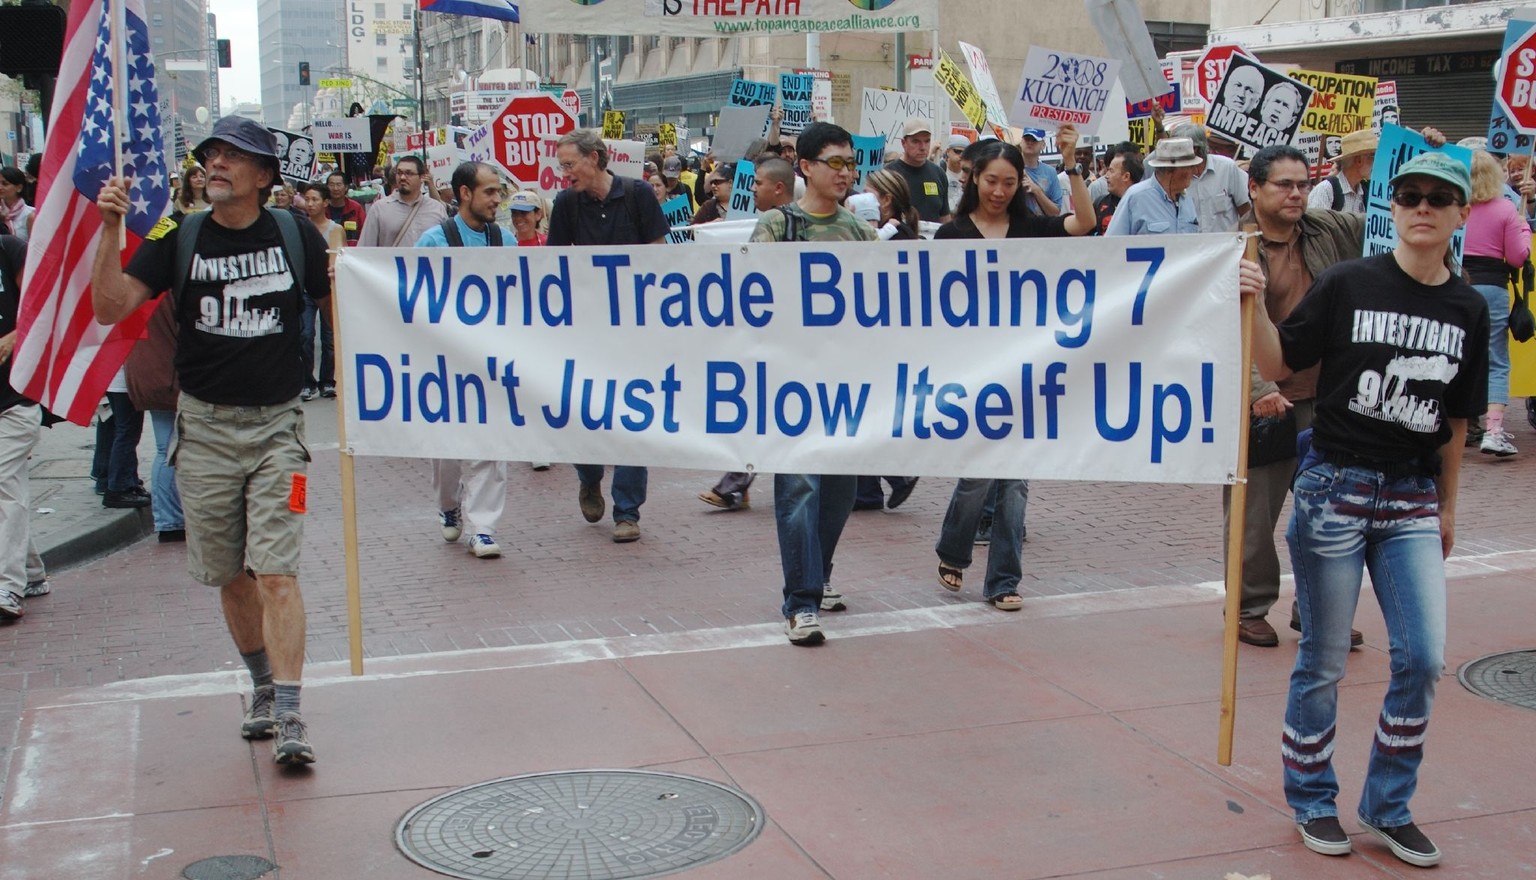 9/11-Truth-Bewegung: Fest überzeugt, dass der Anschlag auf das World Trade Center 2001 eine Operation unter falscher Flagge war.&nbsp;